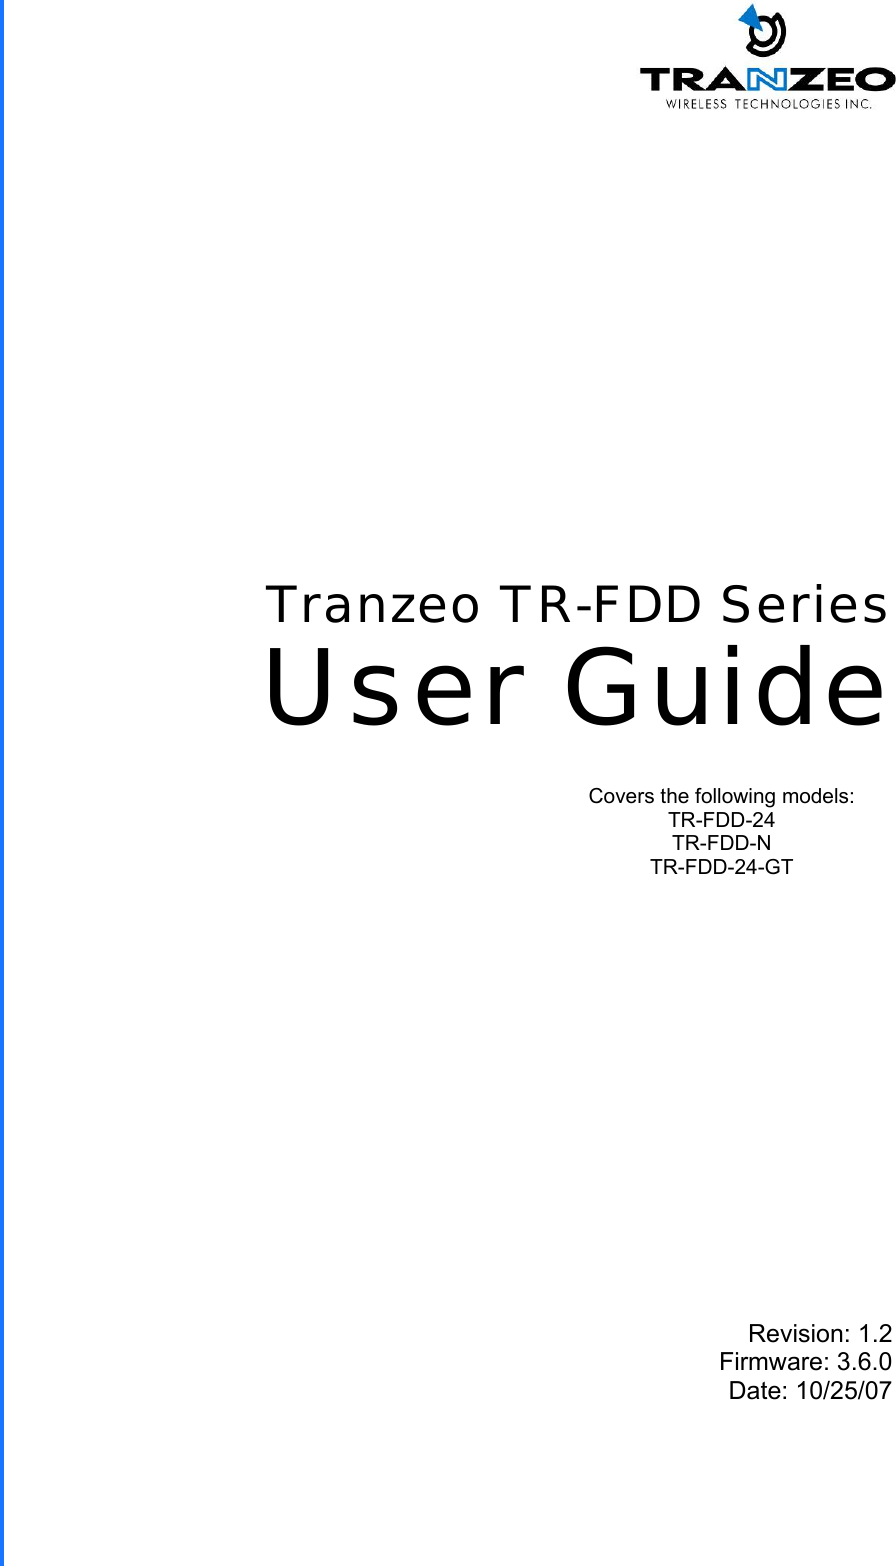  TRANZEO TR-FDD Revision: 1.2 Firmware: 3.6.0 Date: 10/25/07 Tranzeo TR-FDD Series User Guide Covers the following models:   TR-FDD-24 TR-FDD-N TR-FDD-24-GT 